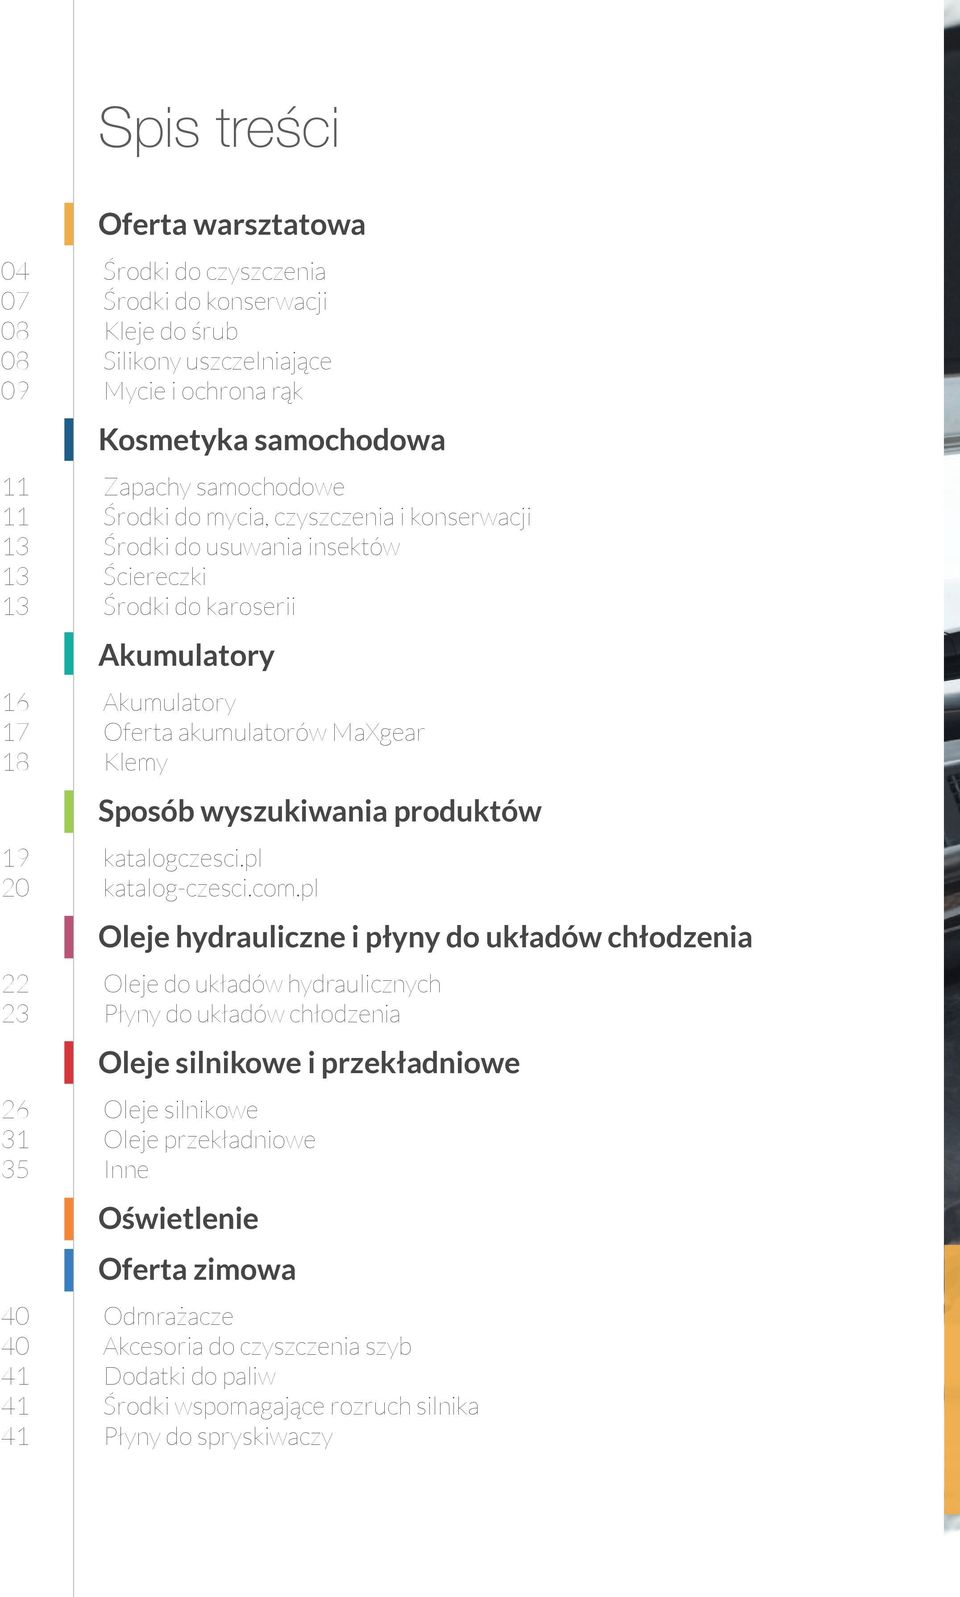 MaXgear Klemy Sposób wyszukiwania produktów katalogczesci.pl katalog-czesci.com.